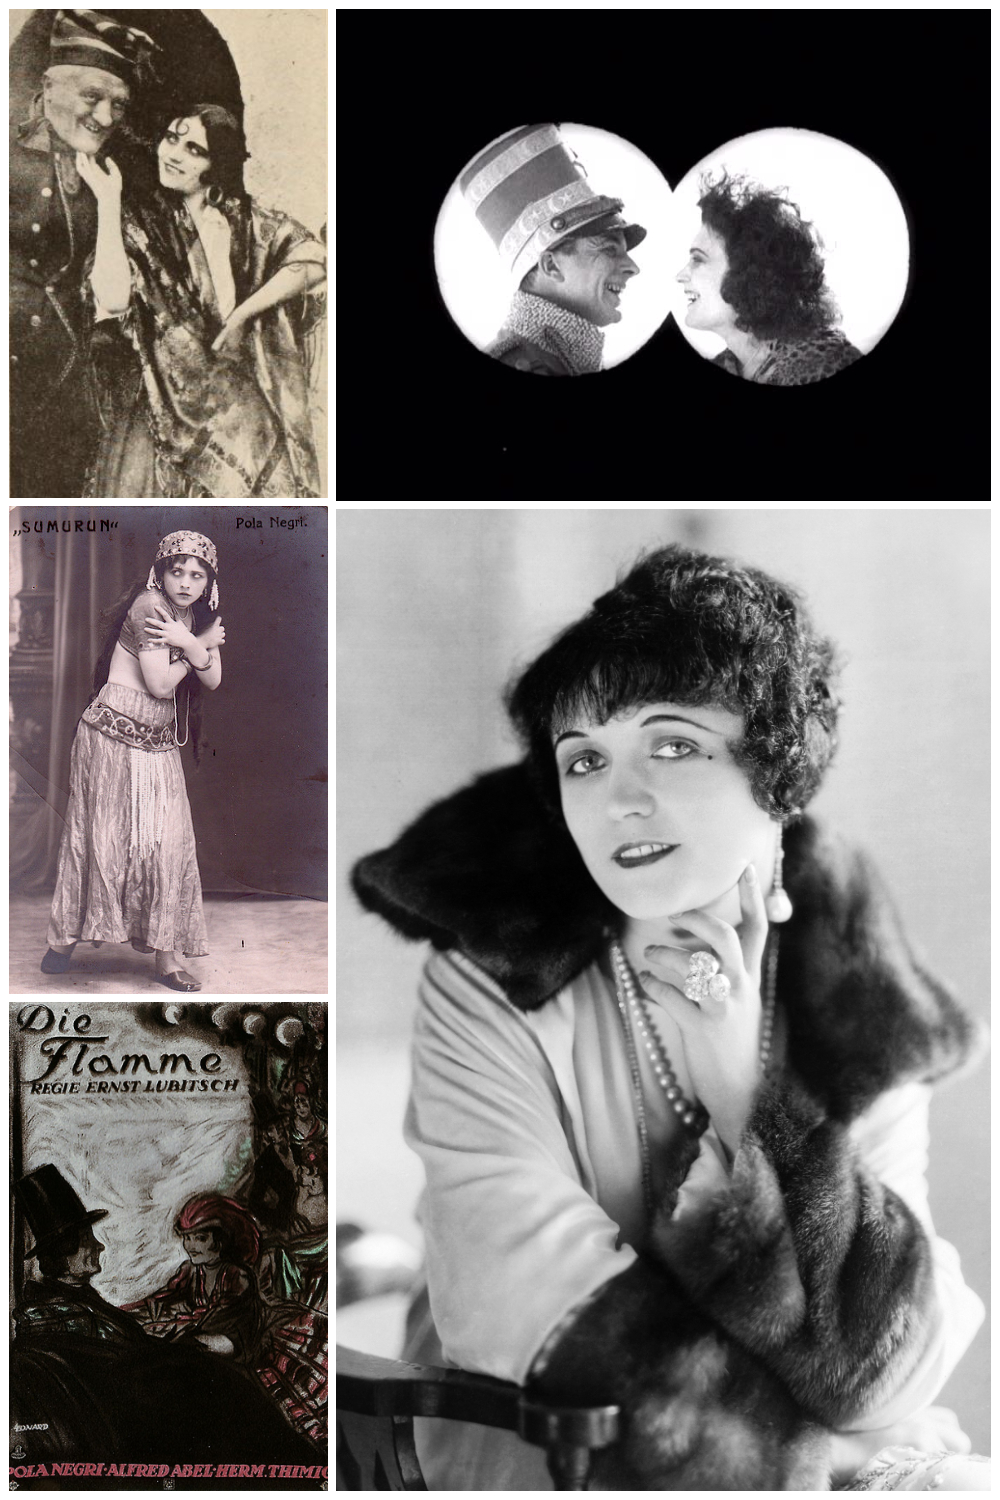 Kadry z filmów "Carmen", "Dzika kotka" i "Sumurun", plakat filmu "Głos ulicy" oraz fotograficzny portret Poli Negri z 1921 roku. Źródło: wikimedia/domena publiczna